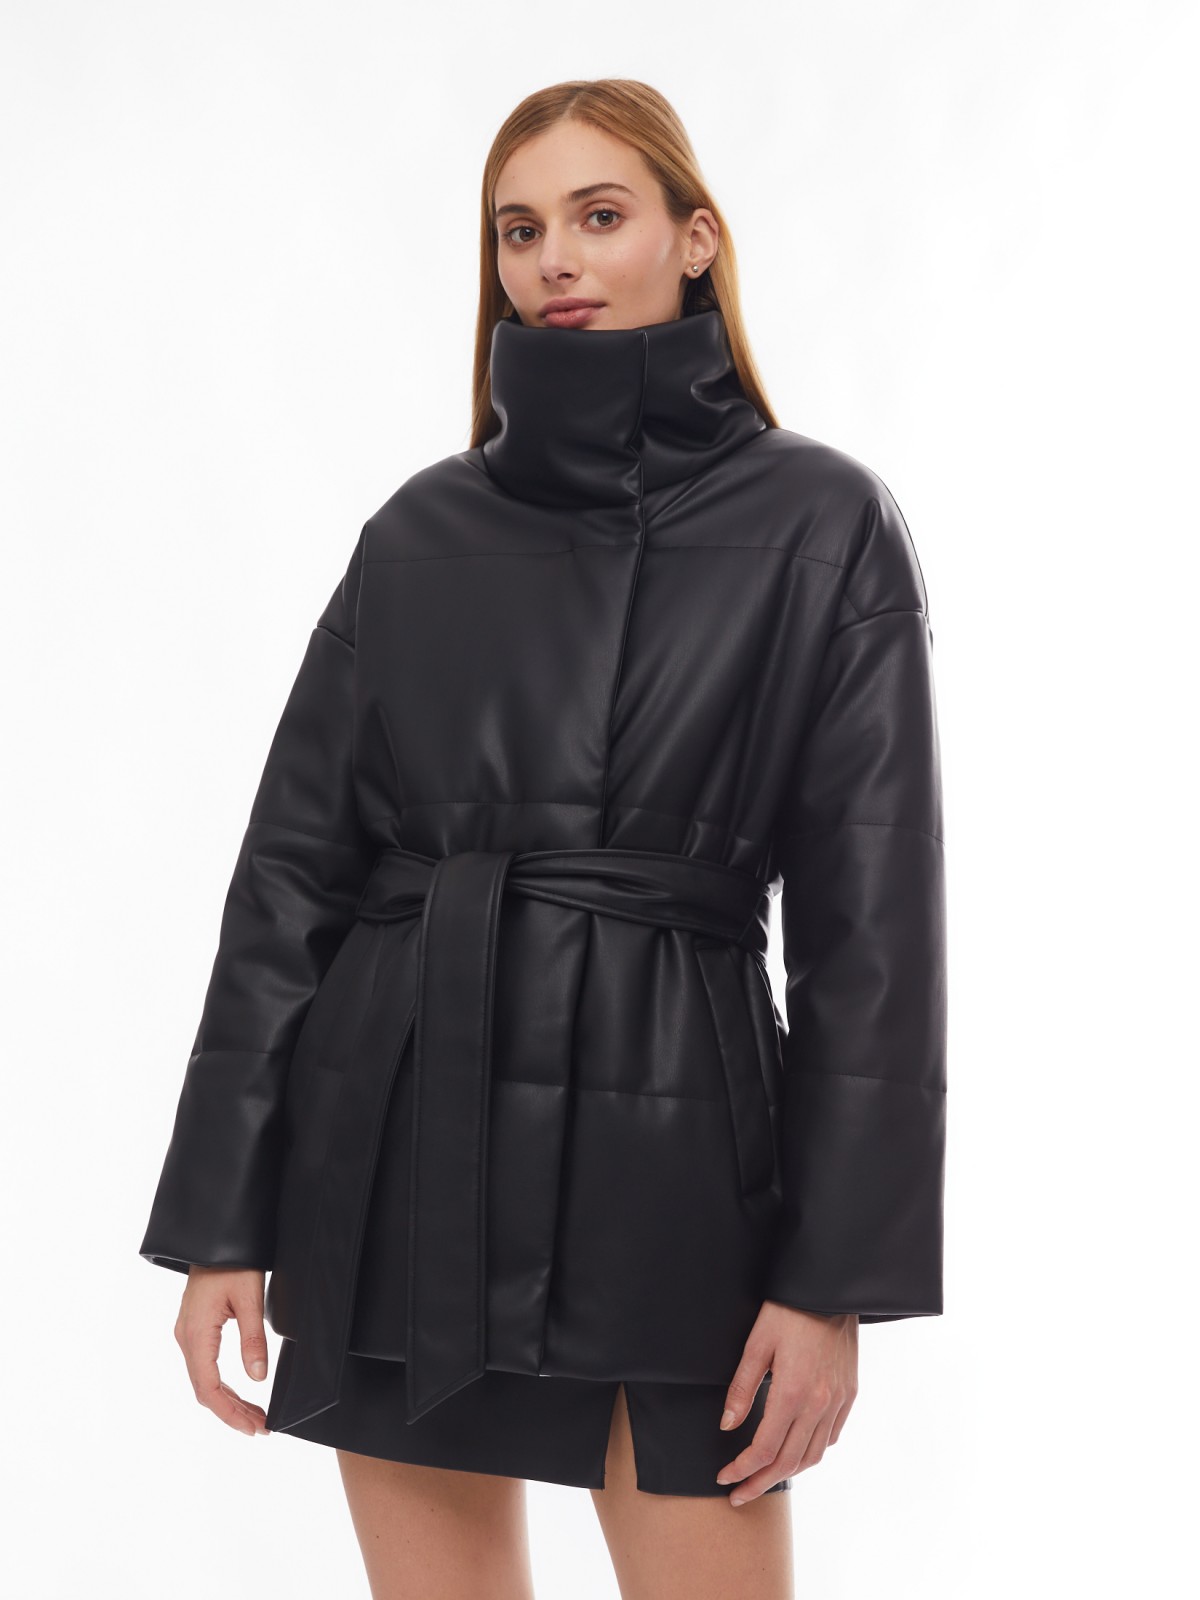 Тёплая дутая куртка из экокожи с высоким воротником и поясом zolla 02412512N104, цвет черный, размер XS - фото 3